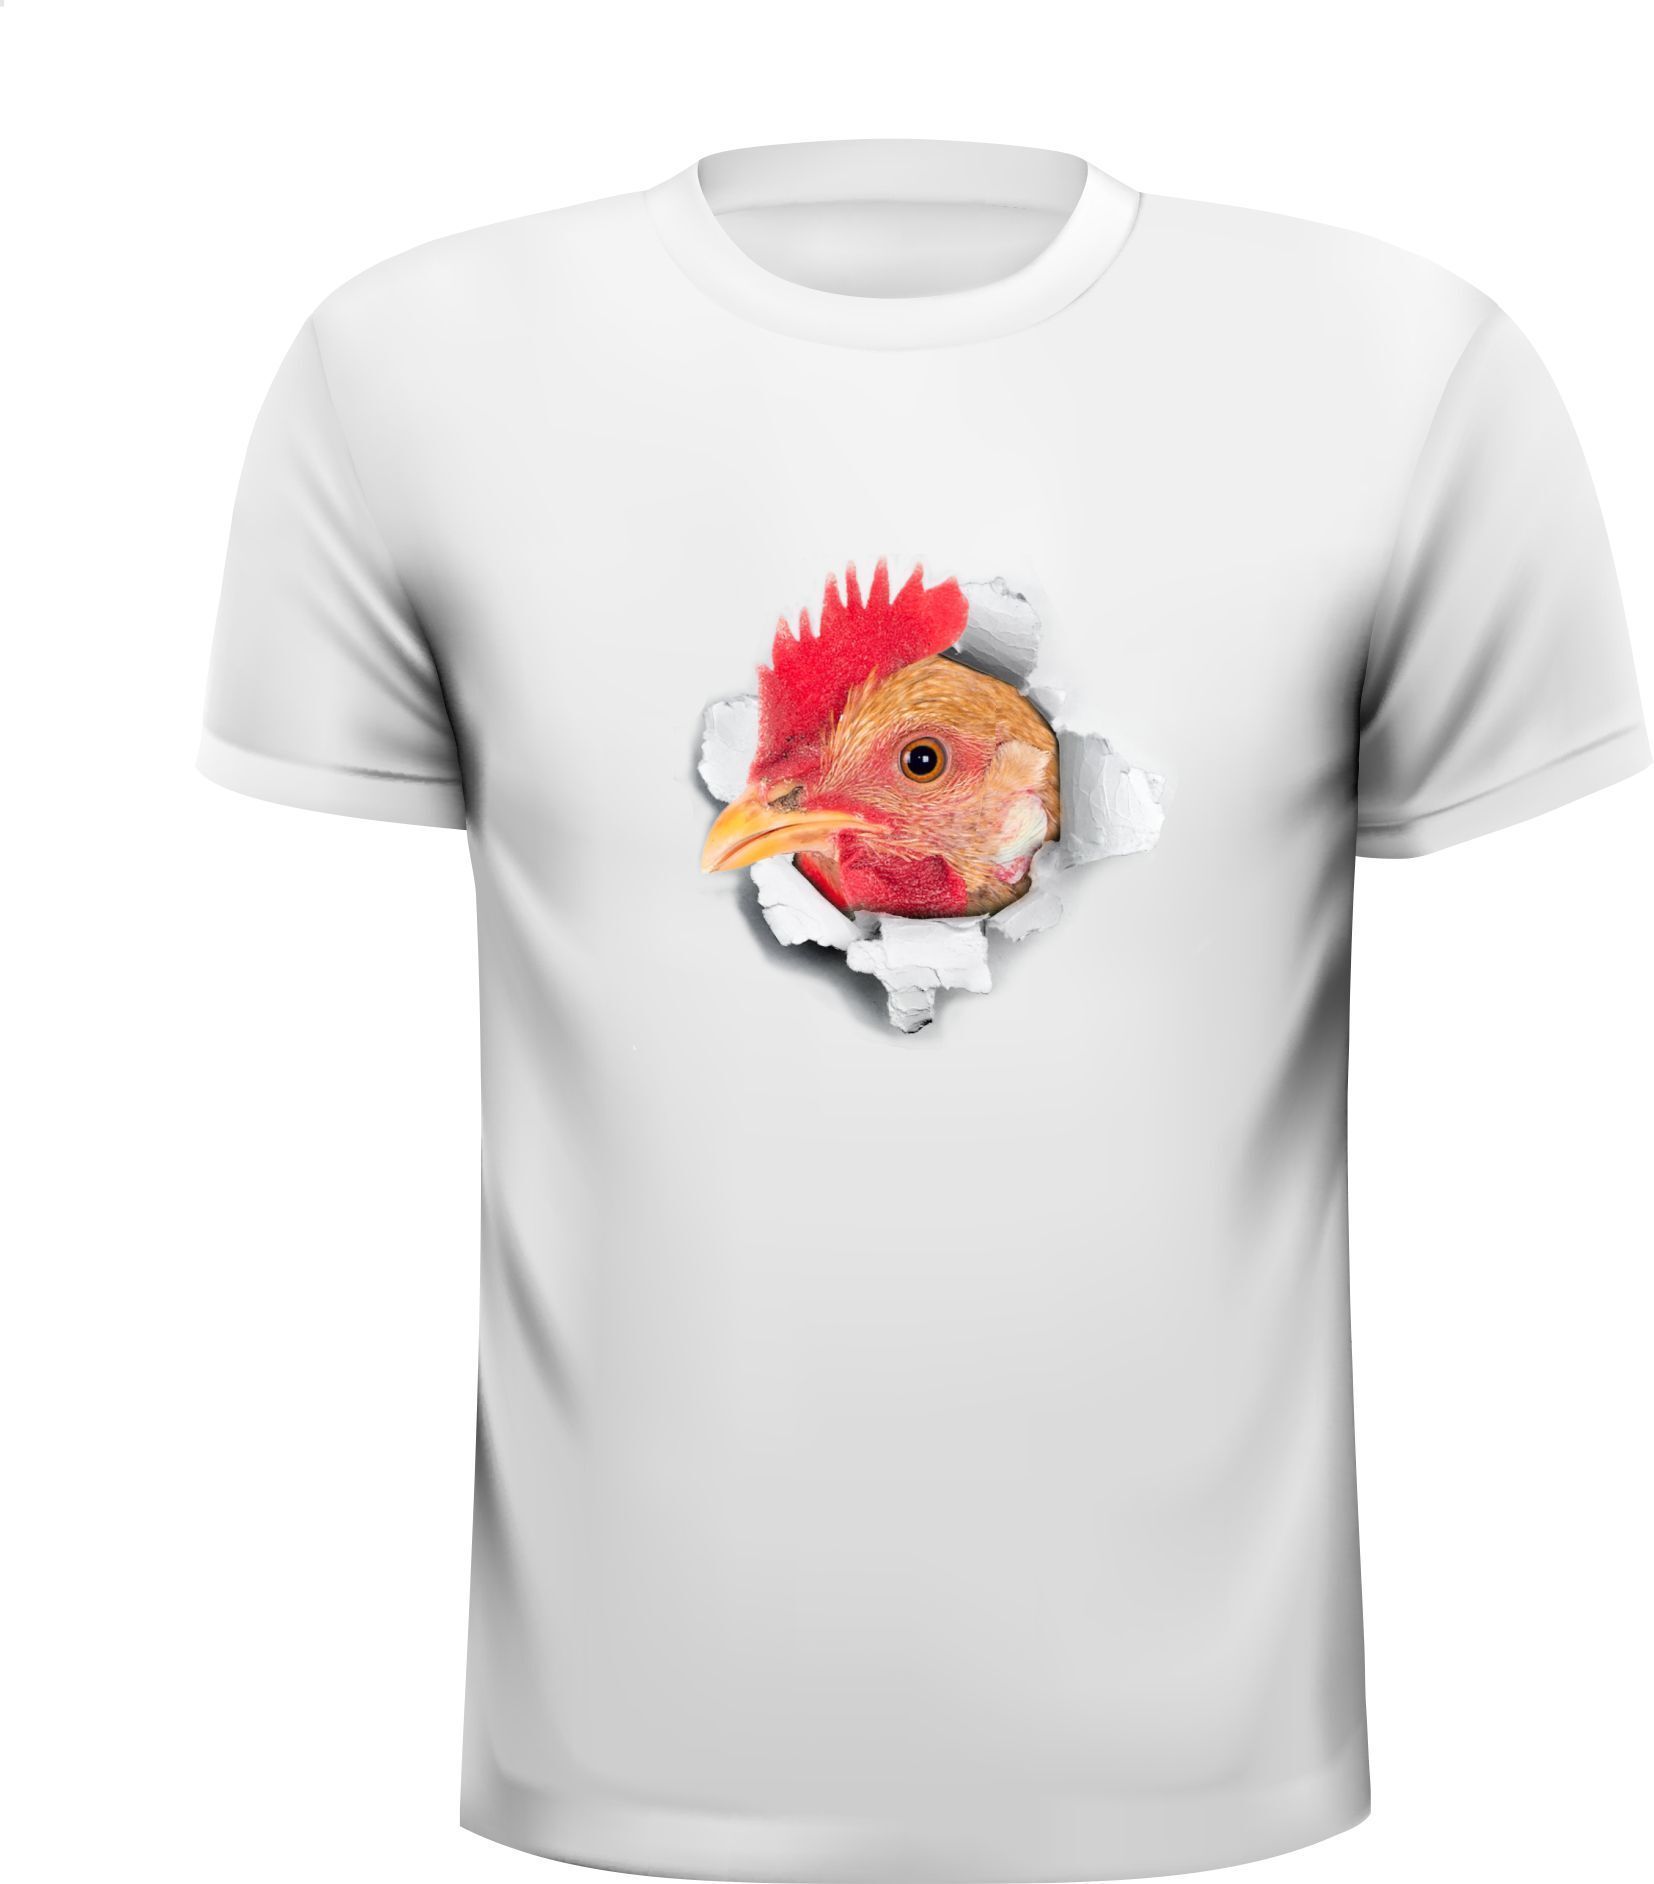 Kip kruip met zijn kop uit T-shirt wit